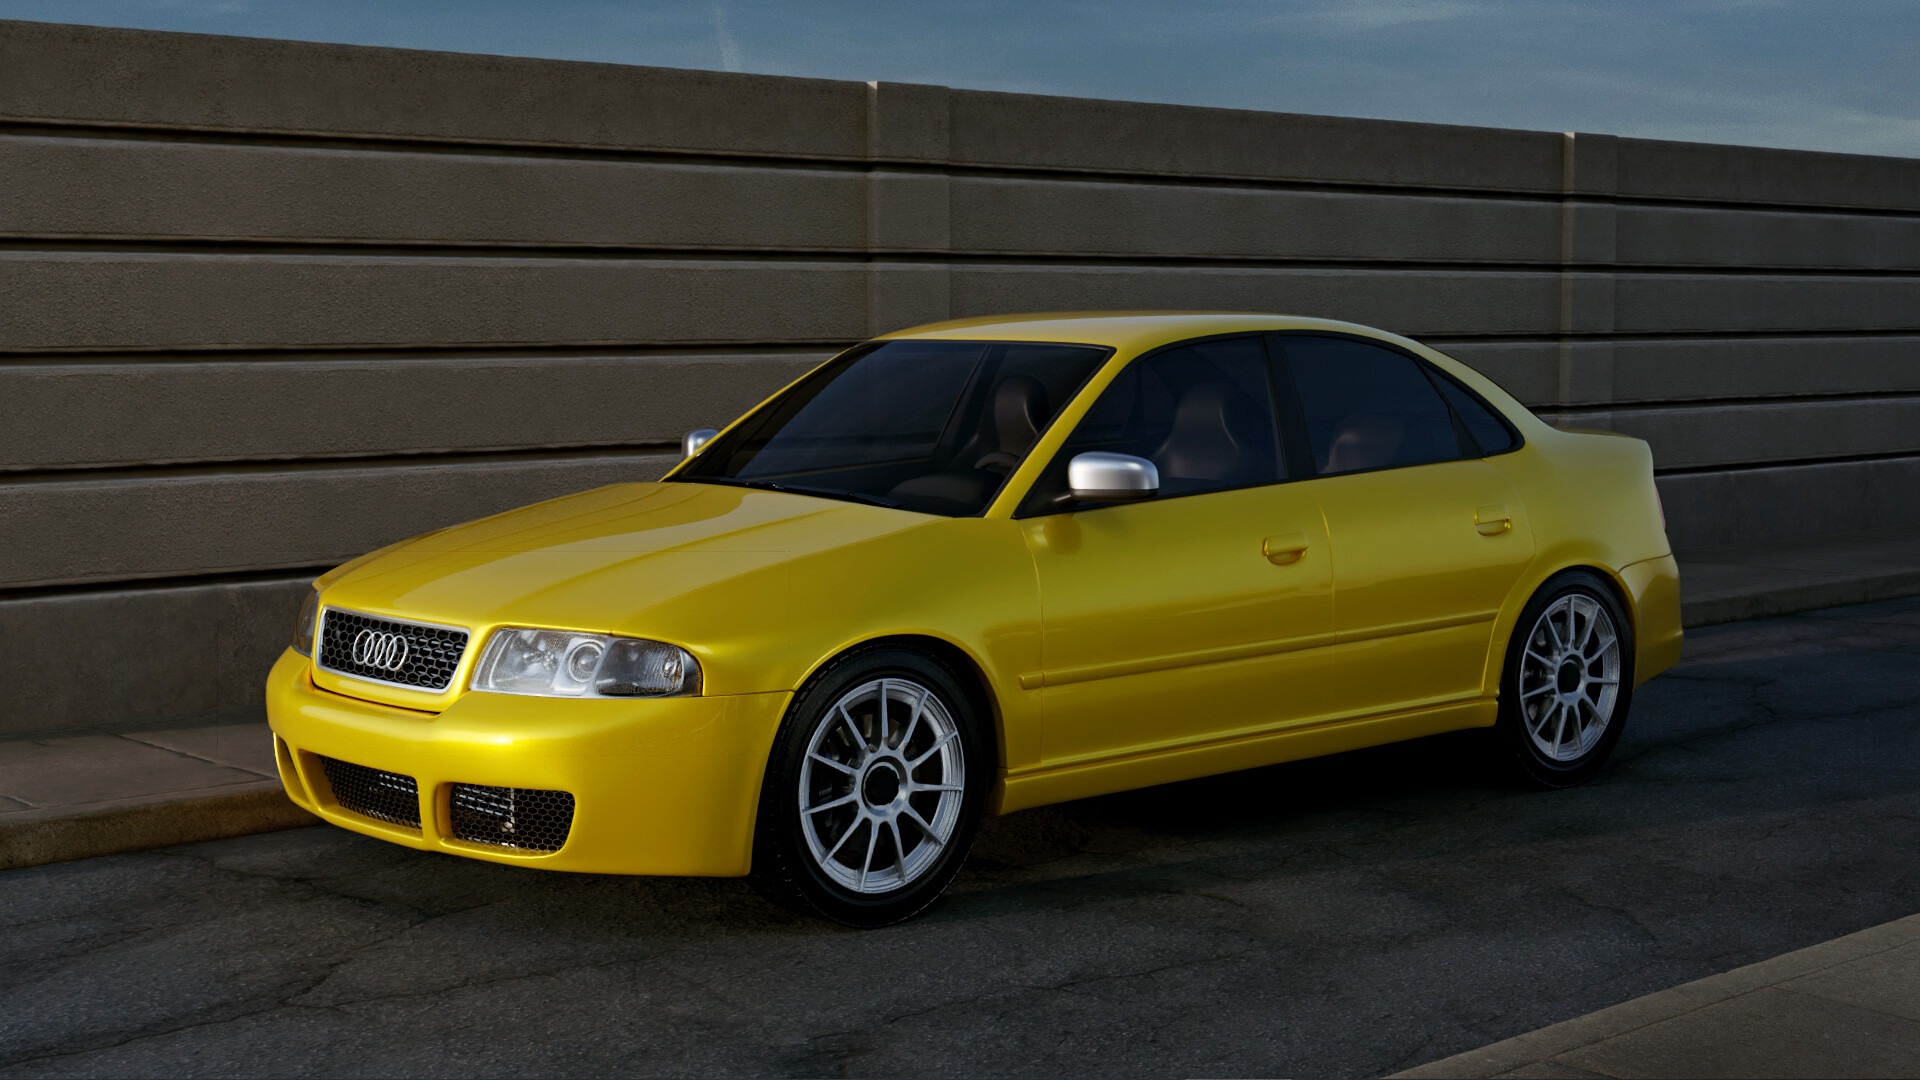 Audi A4 (B5) - Download Free 3D model by Márcio Meireles (@marciomeireles)  [b5861dd]